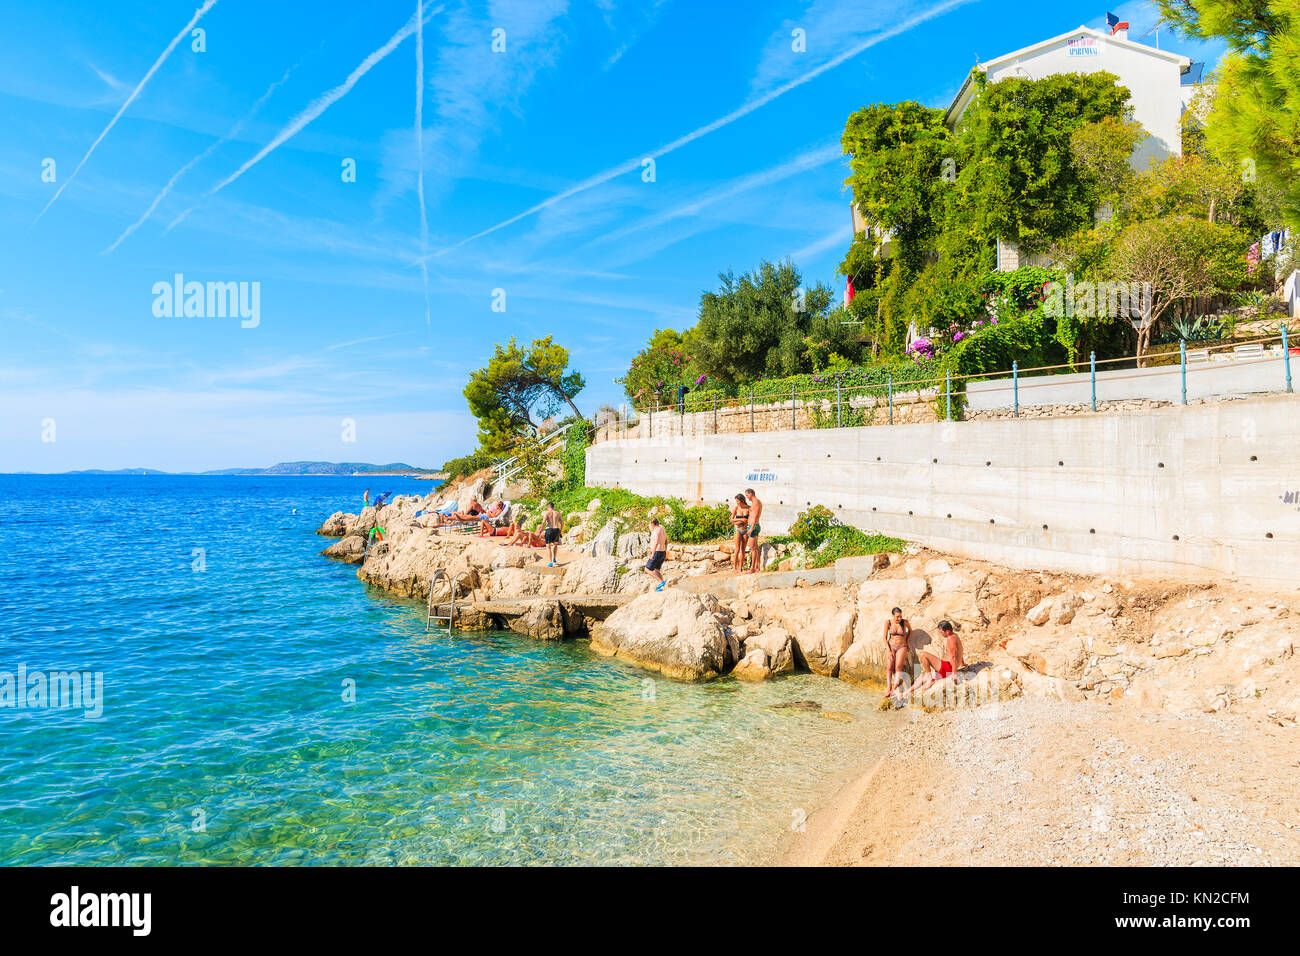 Strand in der Nähe von Primosten, Kroatien - Sep 6, 2017: Junge Menschen entspannen im schönen kleinen Strand in der Nähe von Primosten, Dalmatien, Kroatien. Stockfoto